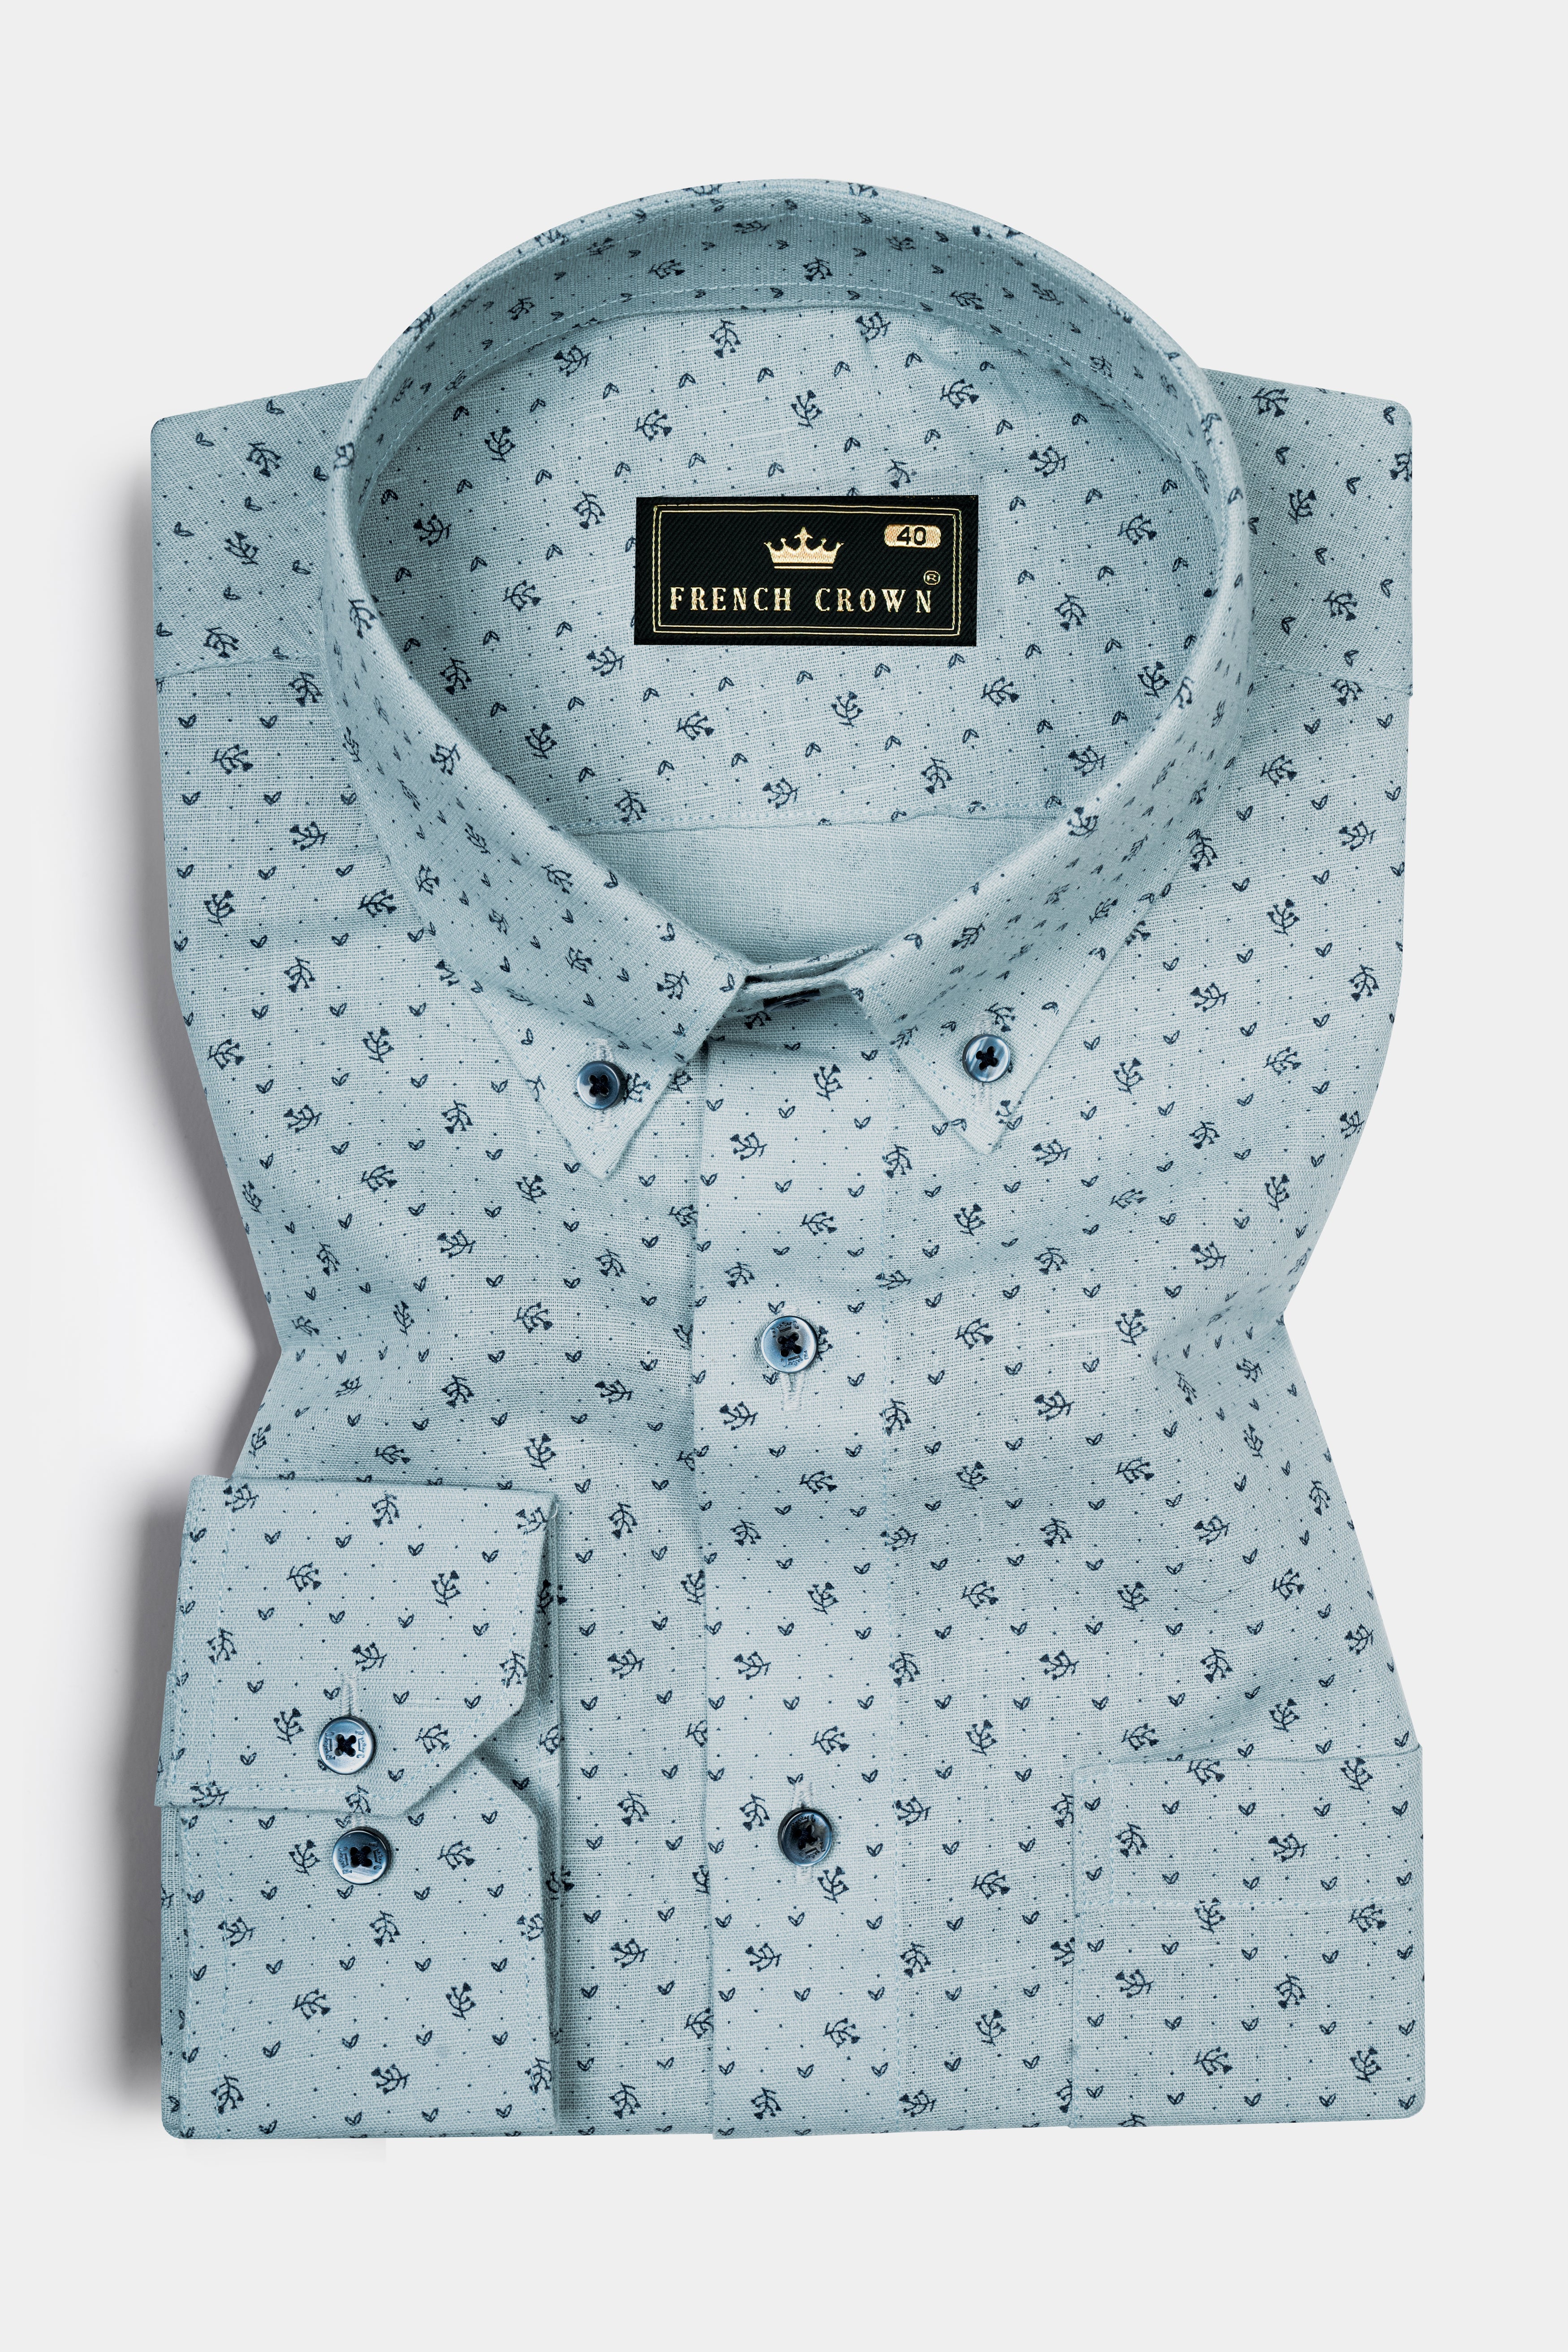 Casper Gray with cinder Blue Flower Printed Luxurious Linen Shirt